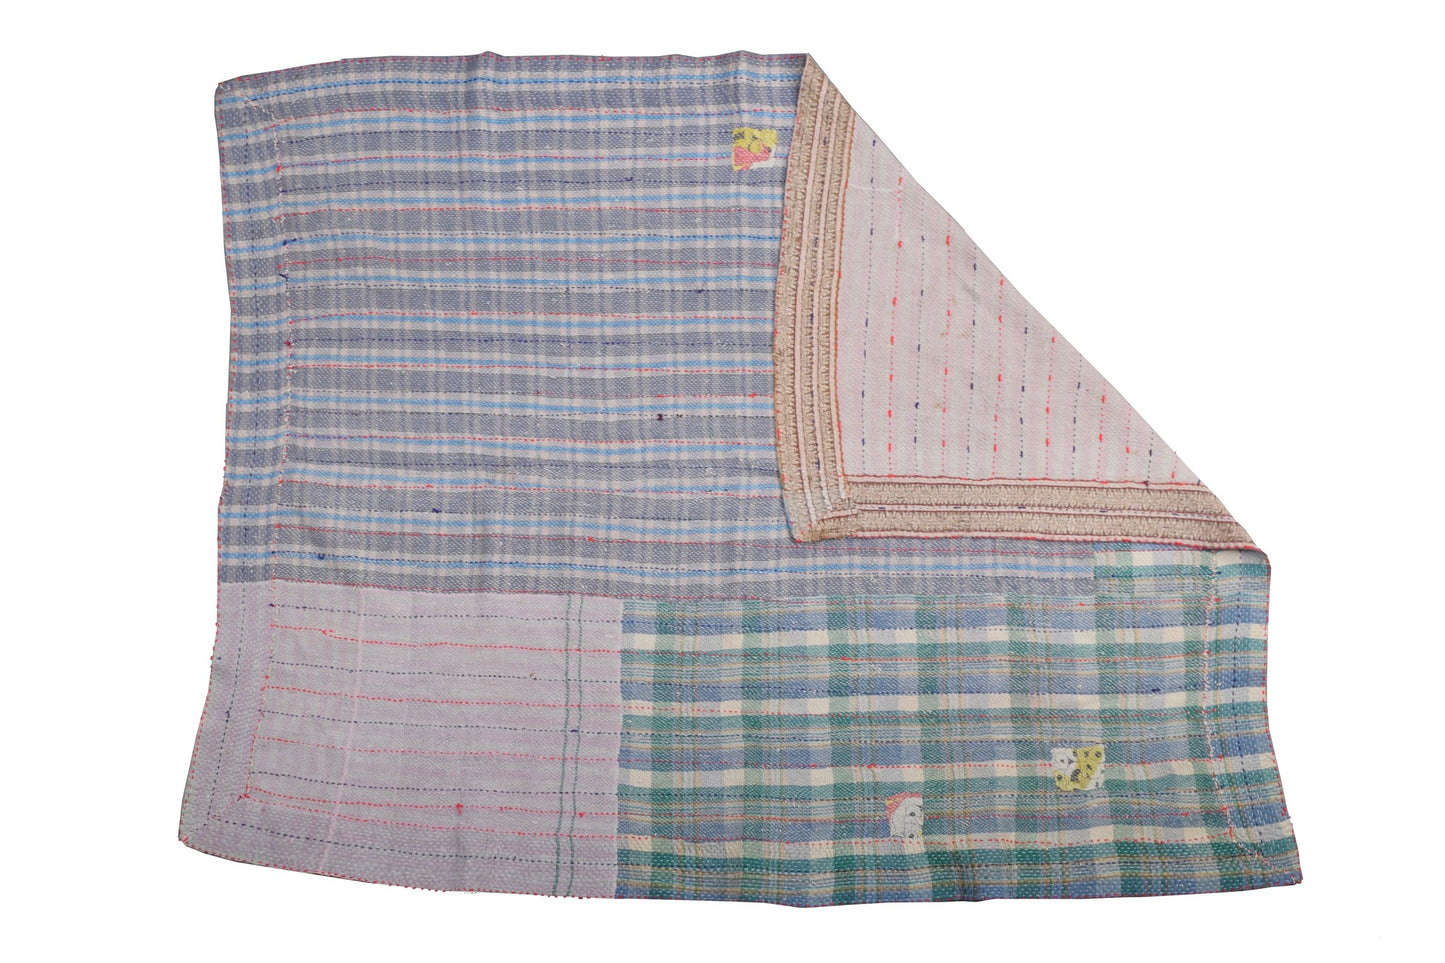 Indian Kantha stitch patchwork throw THR53